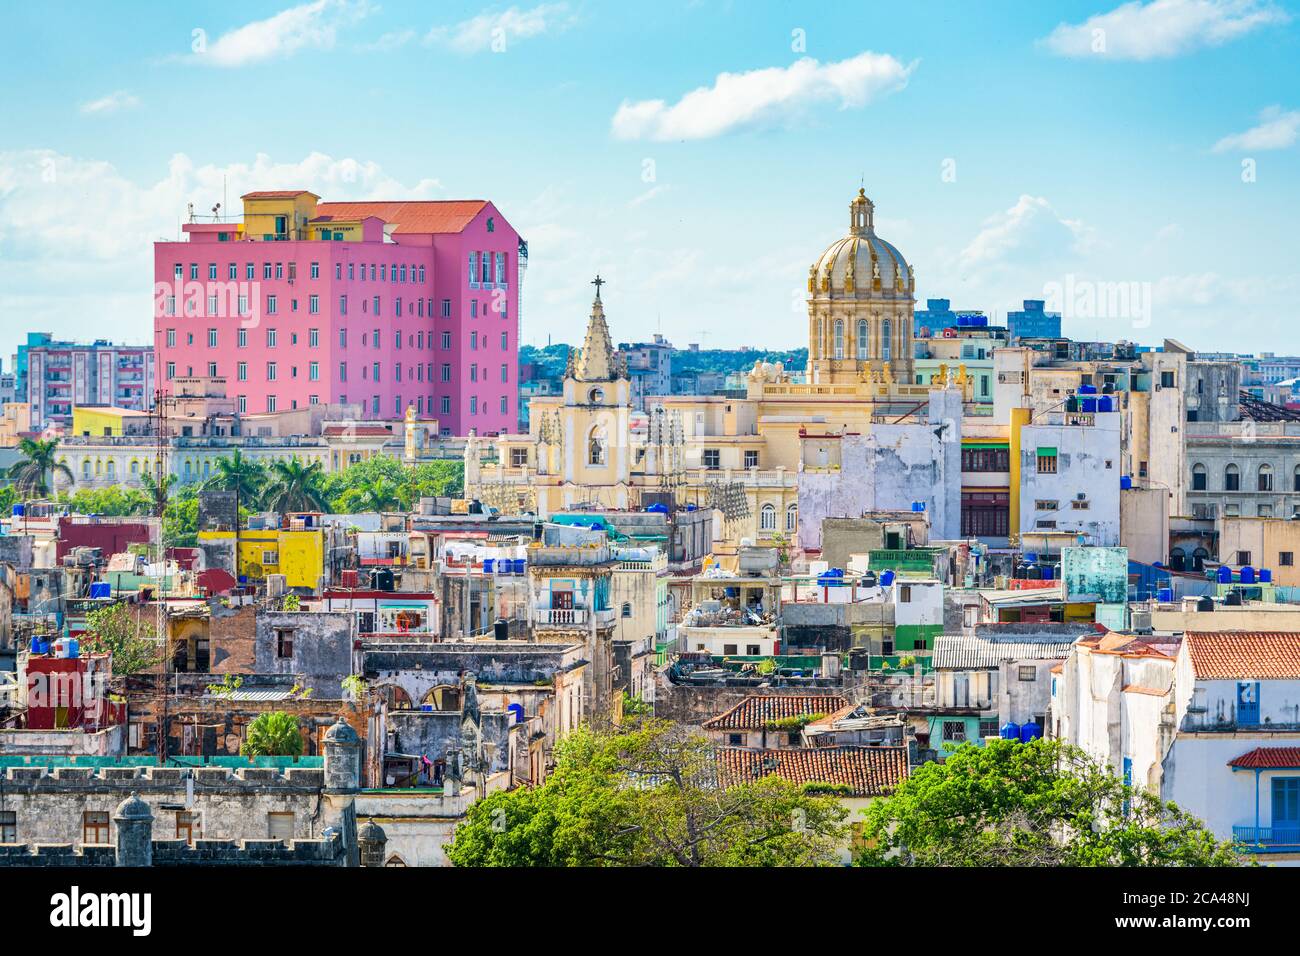 Havana, Cuba old town skyline in the daytime. Stock Photo